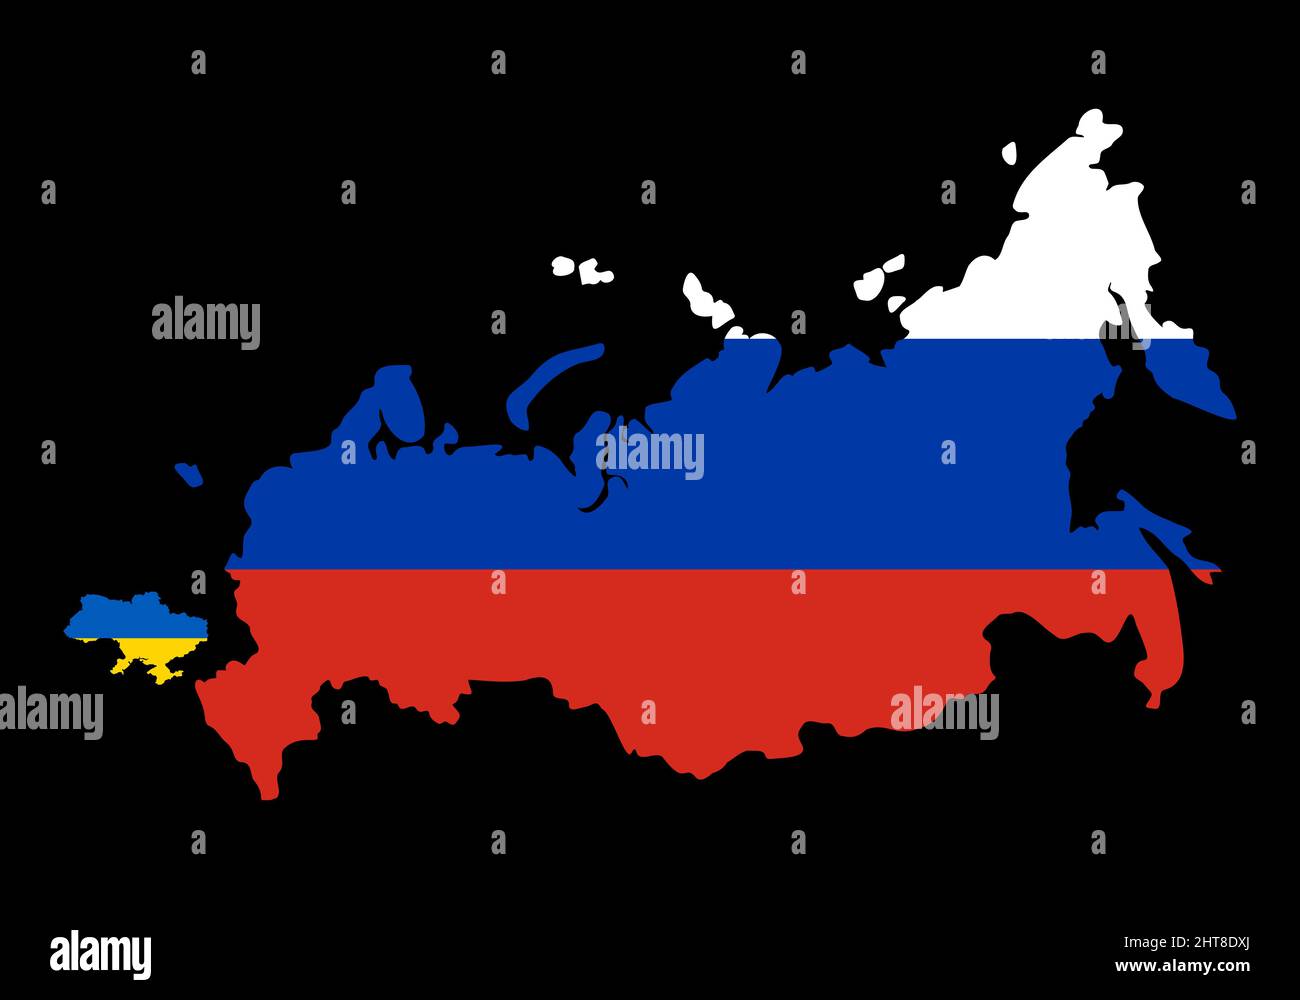 Grande Russie contre petite Ukraine. Comparez les tailles de la carte des pays sur la carte du monde. Frontières de la Russie et de l'Ukraine. Représentation des limites sur le possible Illustration de Vecteur